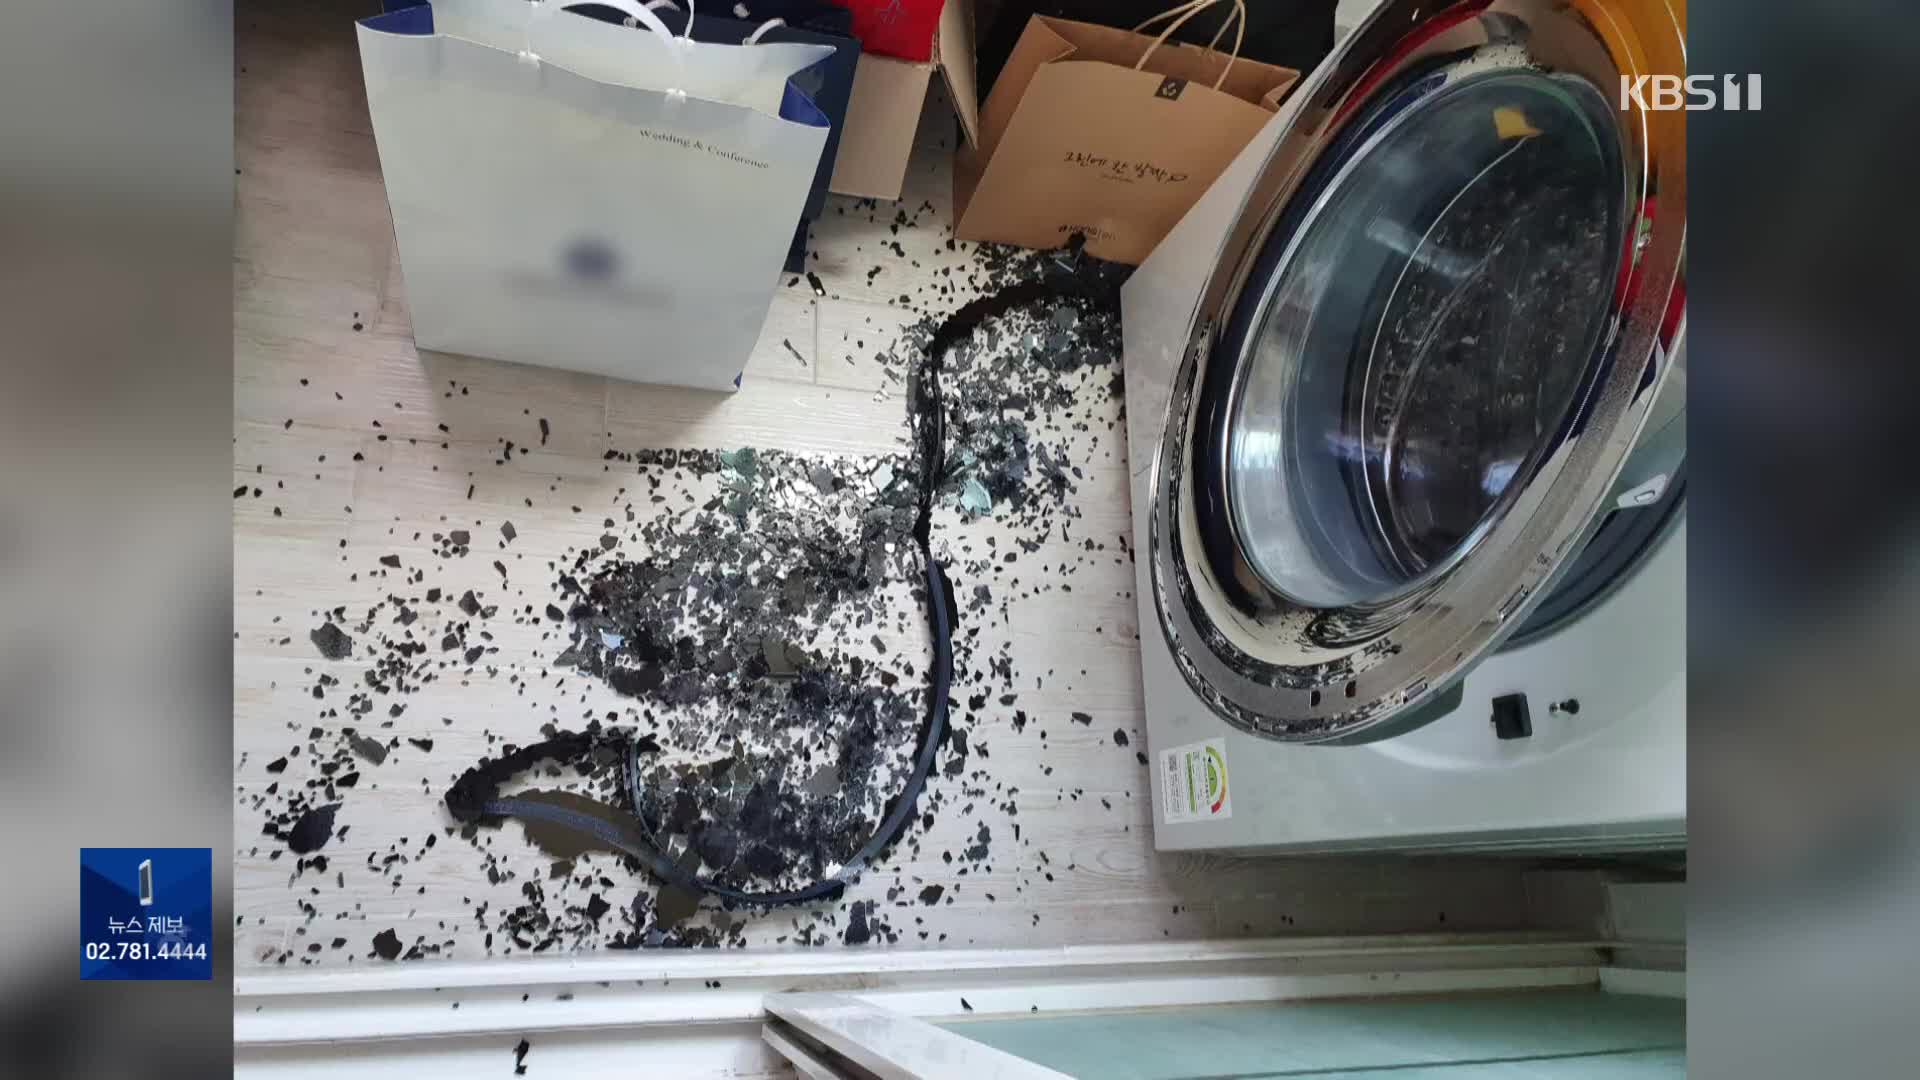 세탁기 유리문 또 ‘와장창’…삼성 “폭발 아닌 이물질 때문”